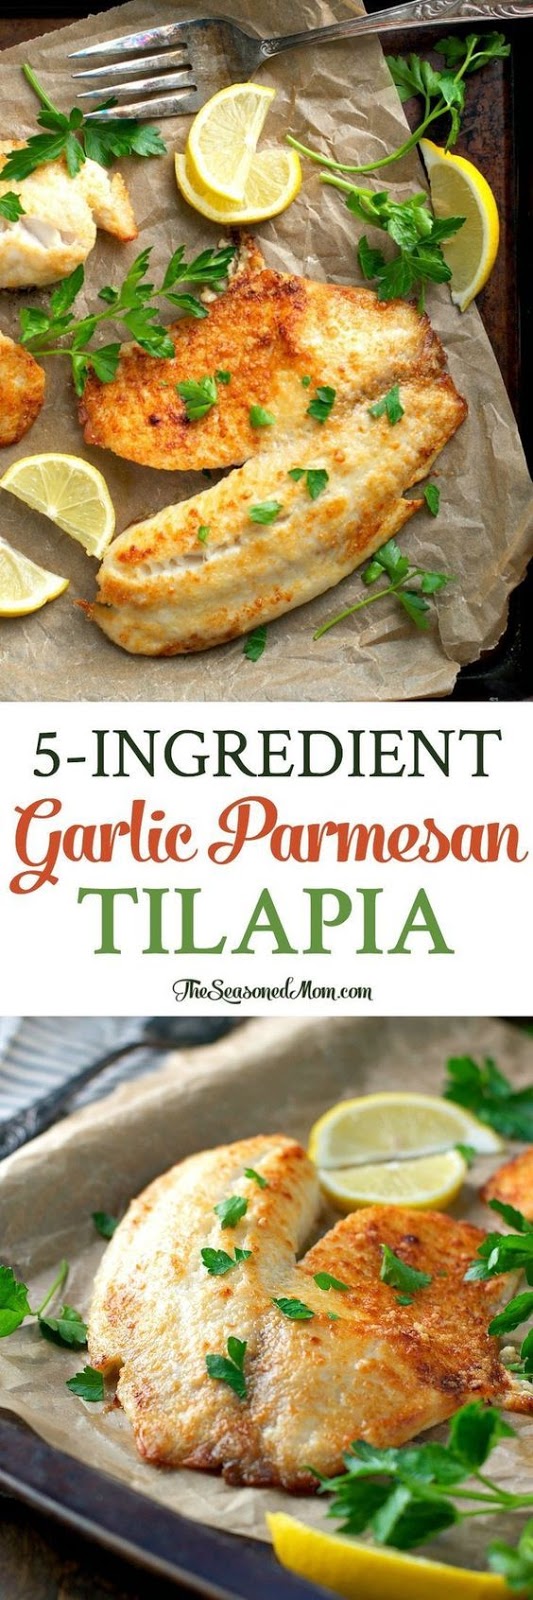 5-Ingredient Garlic Parmesan Tilapia